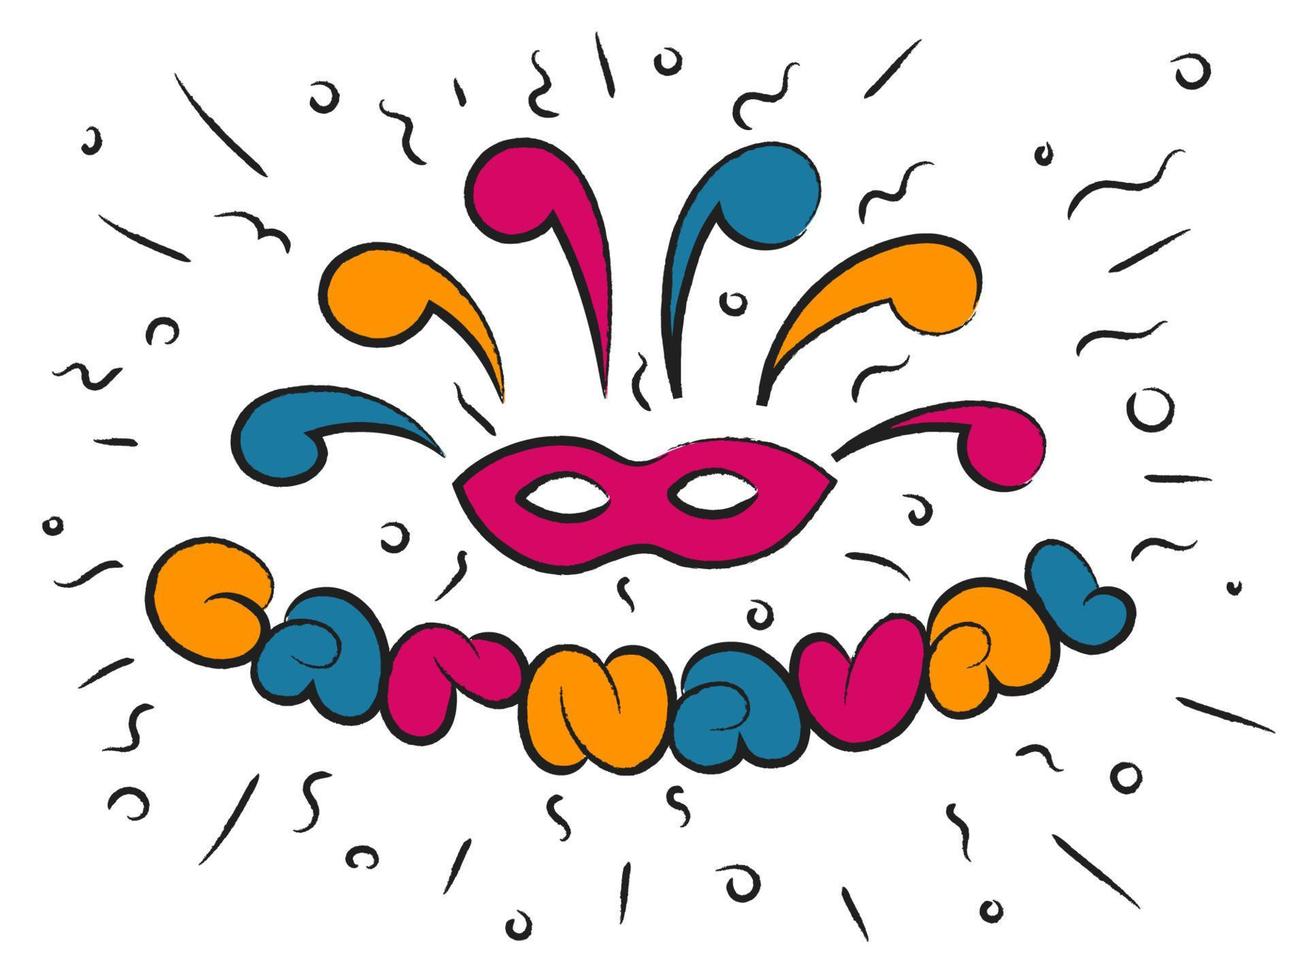 carnaval kleurrijke belettering masker vakantie partij elementen feestelijke stemming ritme dans muziek vectorillustratie vector